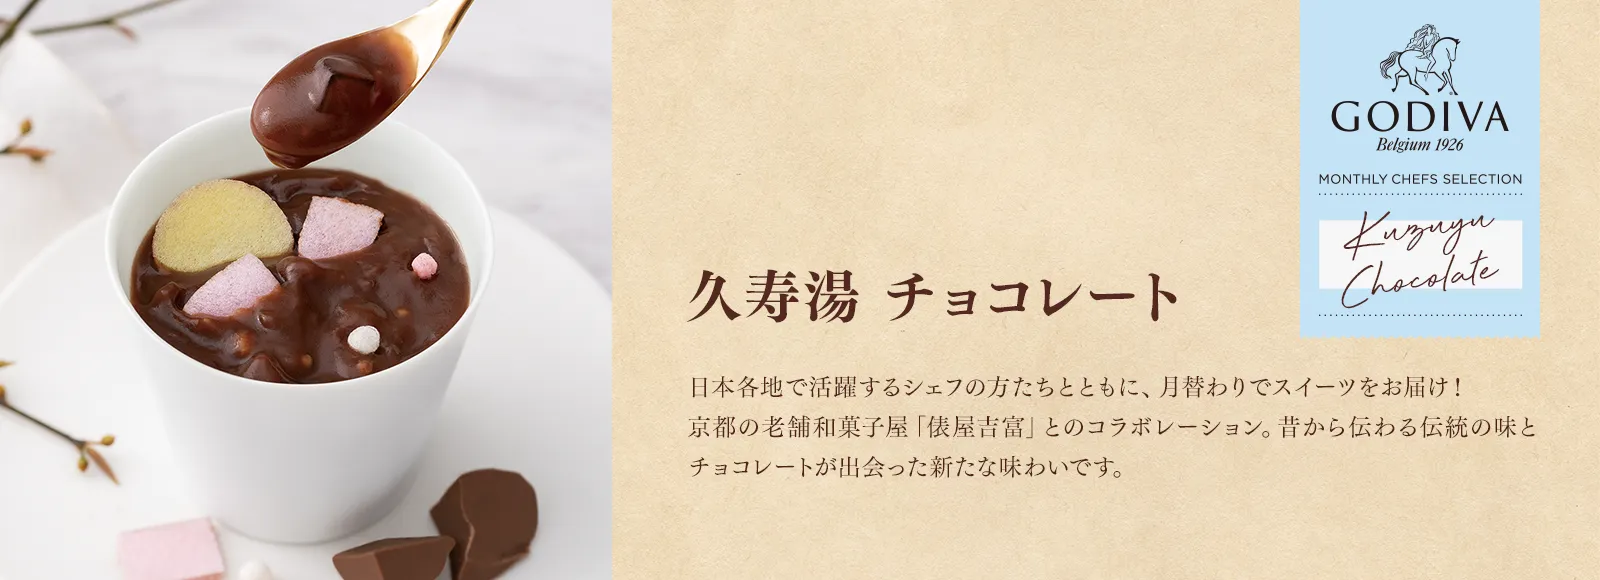 久寿湯 チョコレート